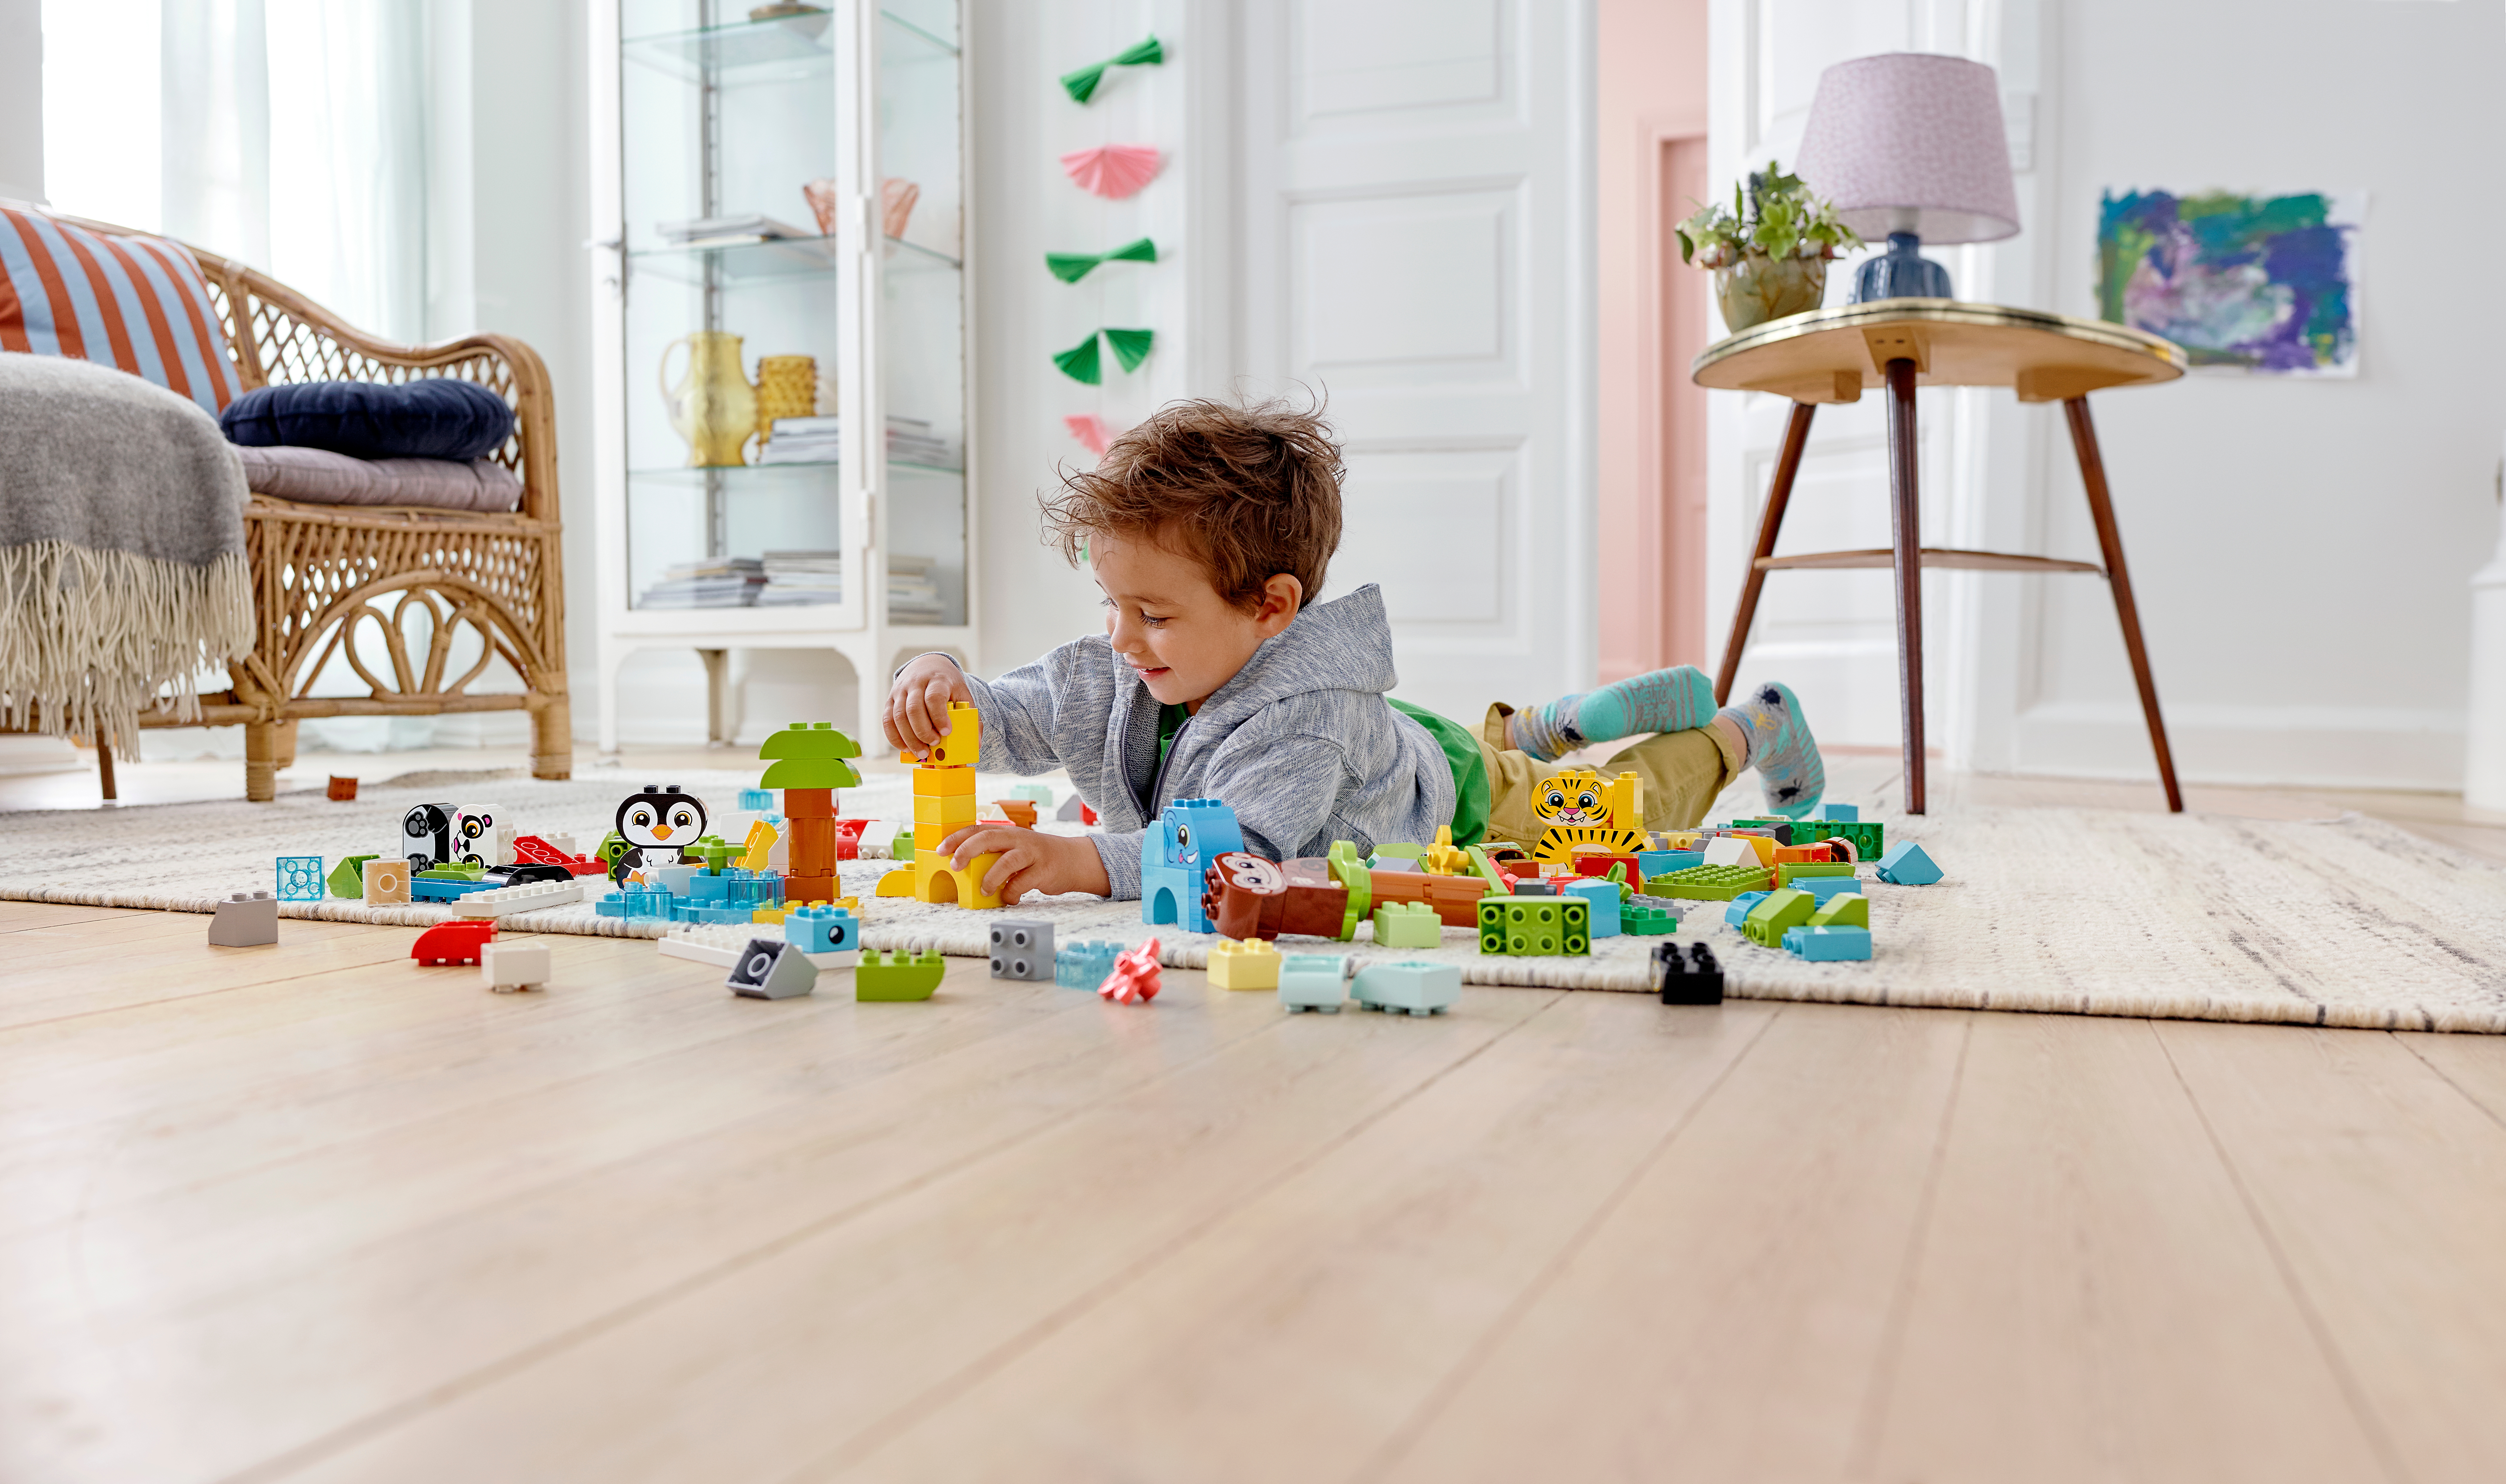 幼児に最適な知育玩具 |レゴ®ショップ公式オンラインストアJP